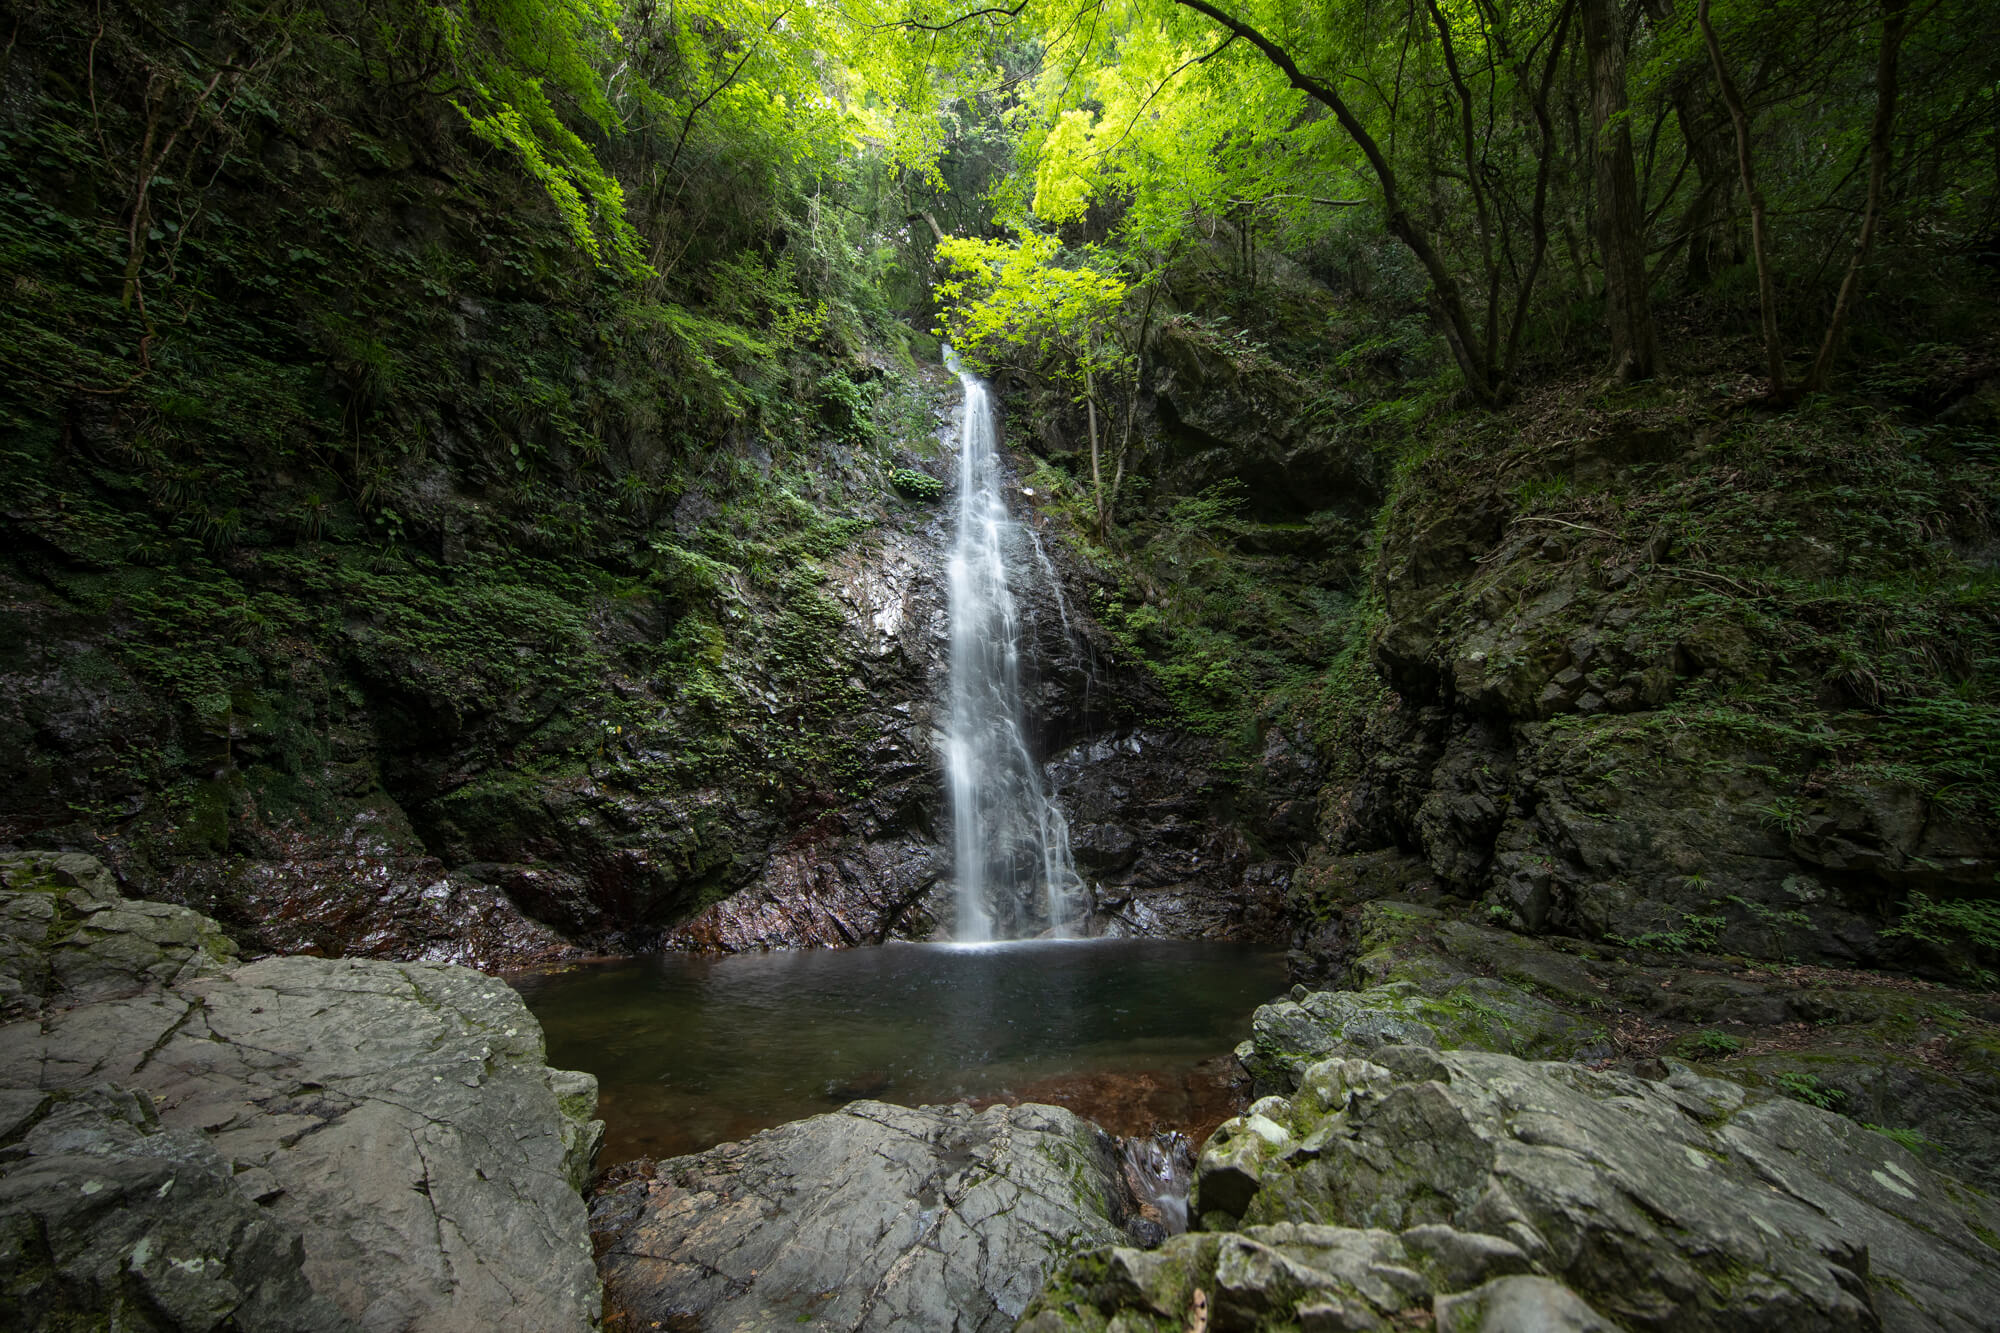 日本の滝百選に選ばれている「払沢の滝」の風景